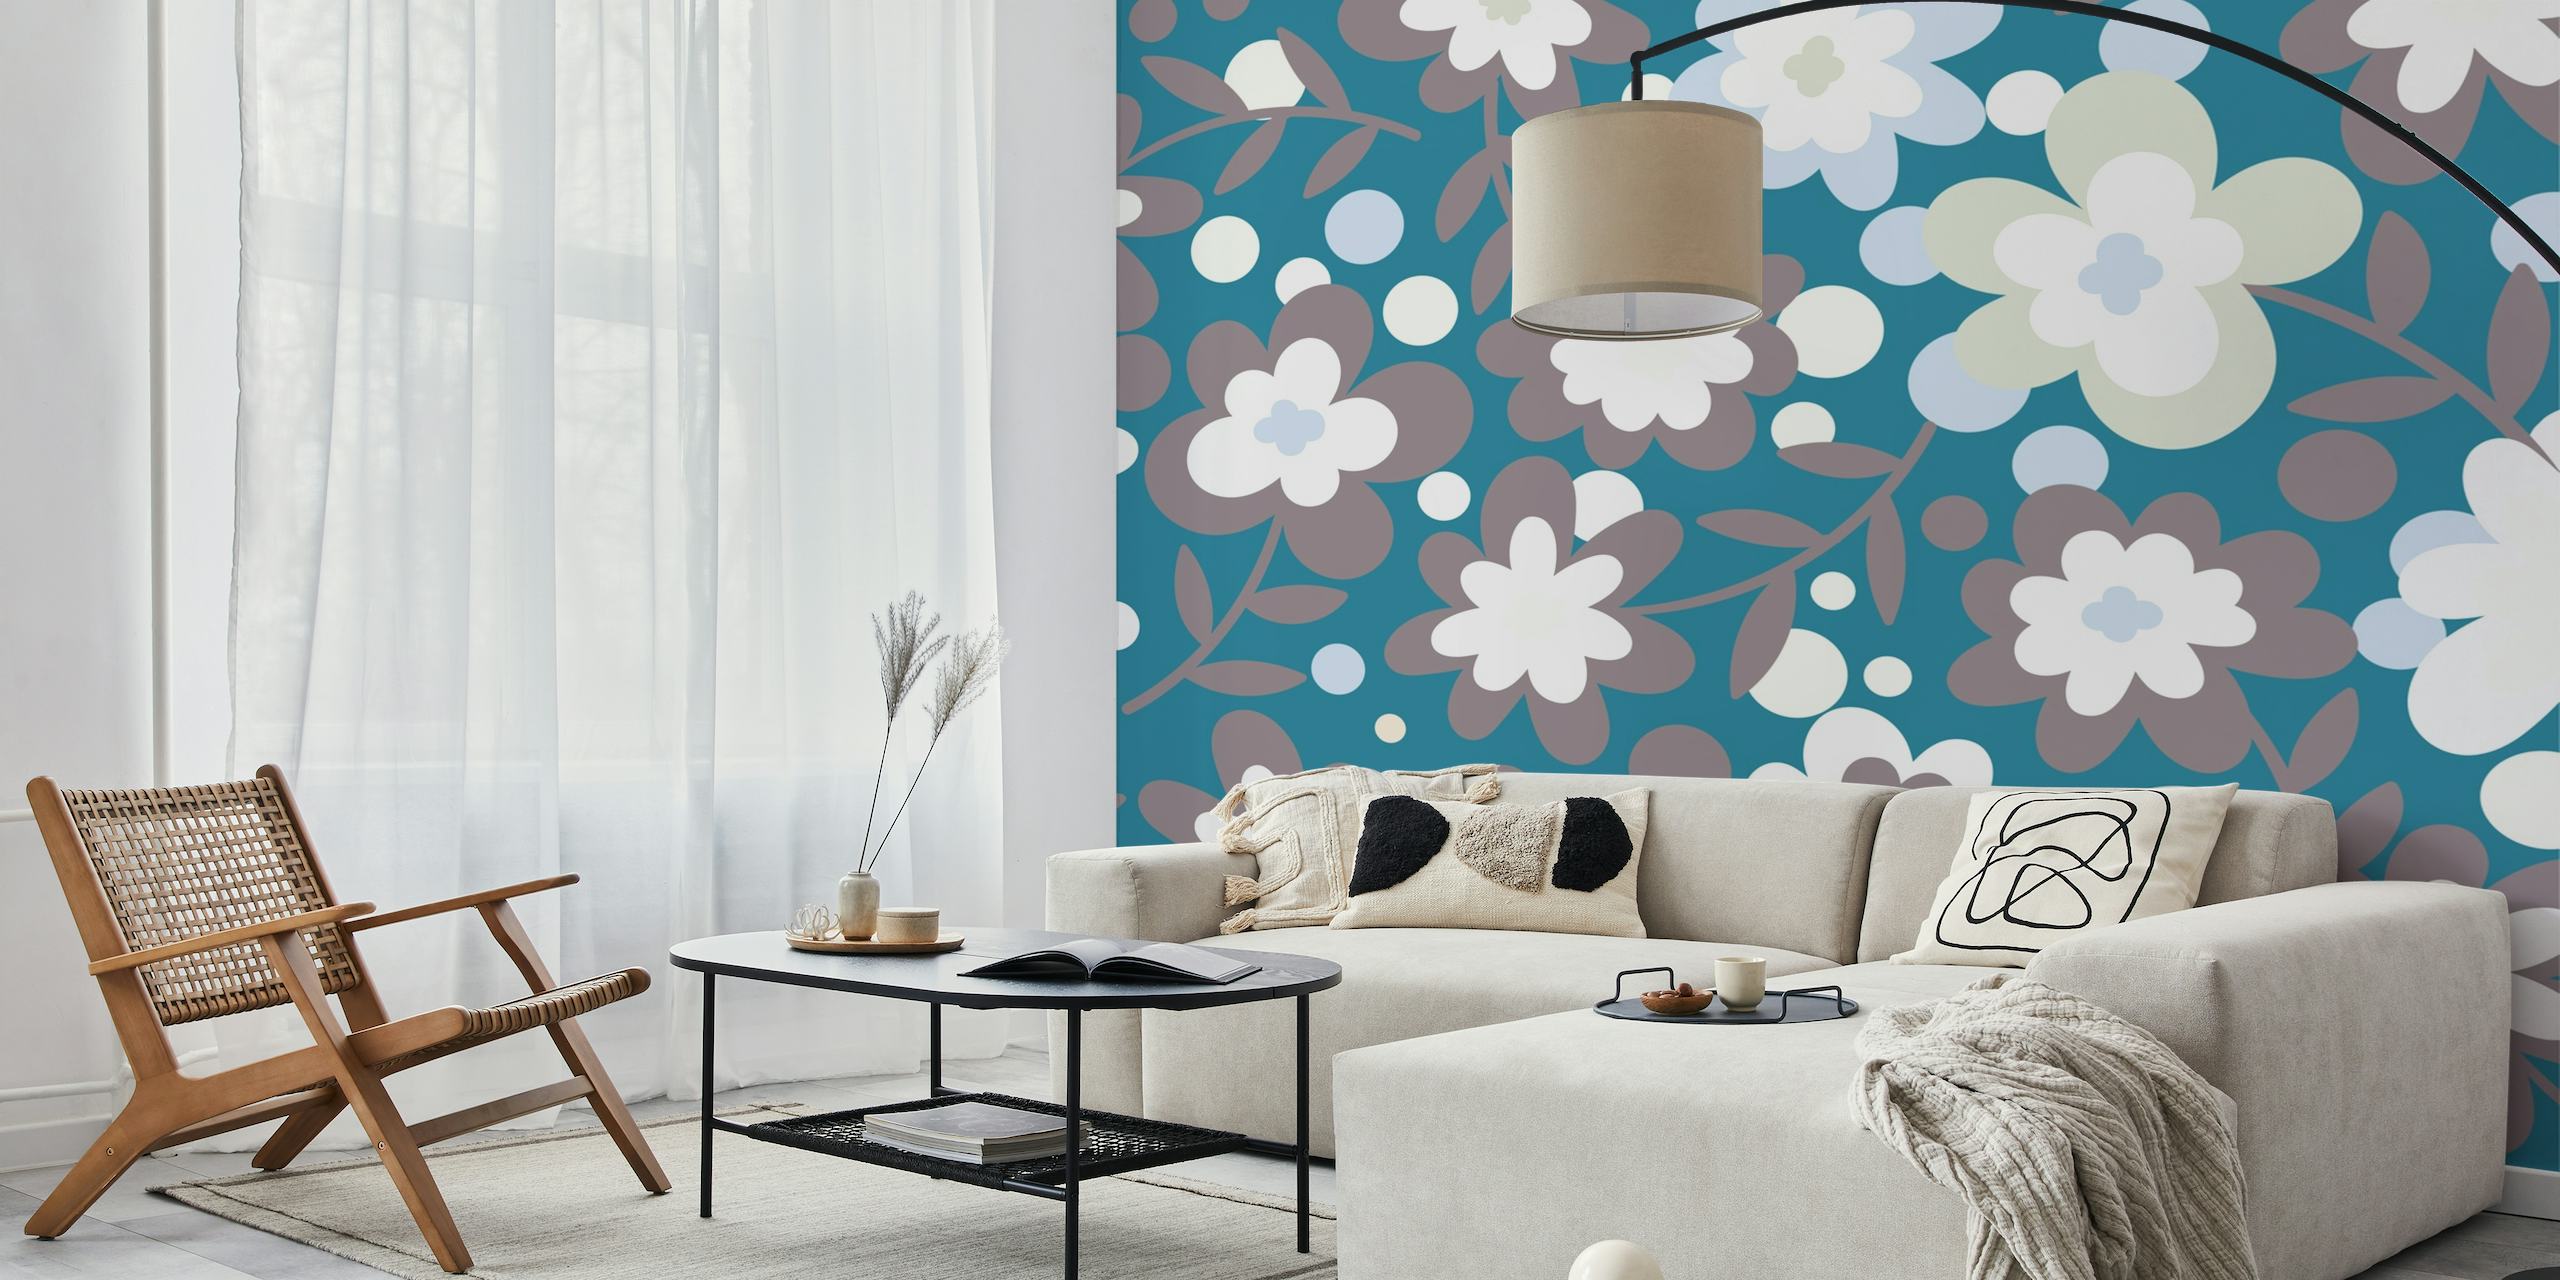 Elegante witte, groenblauw en grijze muurschildering met bloemmotief